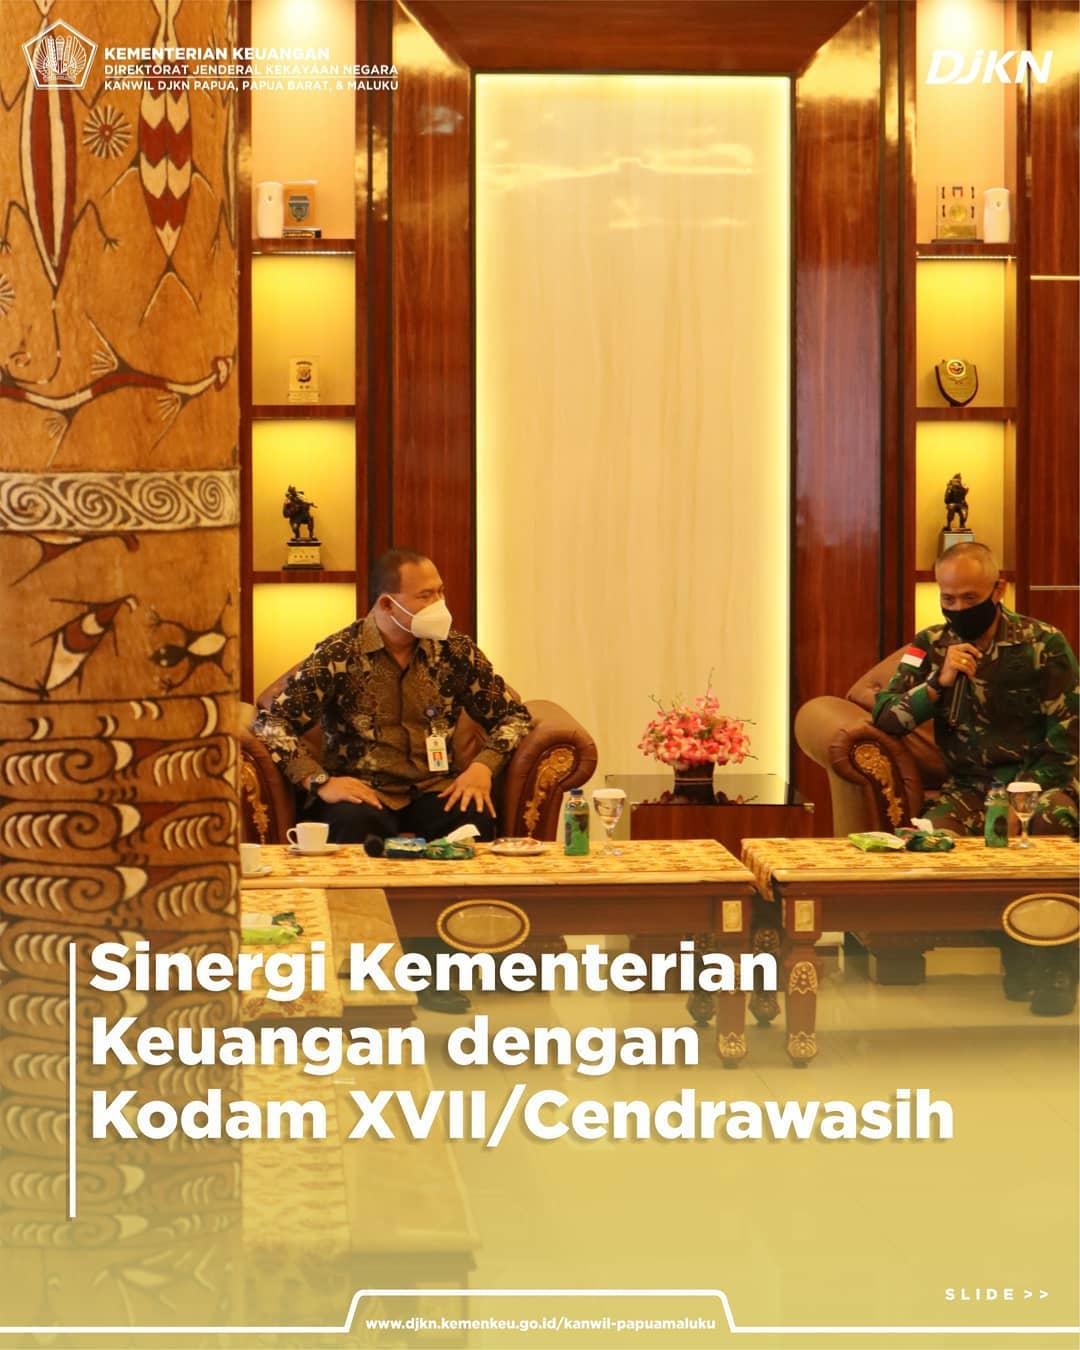 Sinergi Kementerian Keuangan Kota Jayapura Bersama Kodam XVII/Cenderawasih Papua